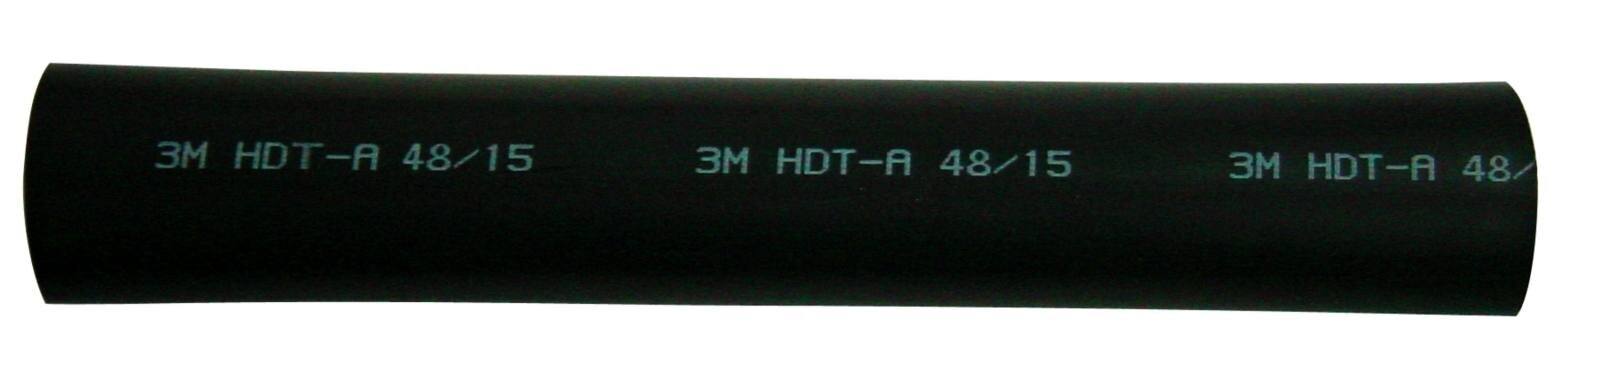 3M HDT-A Tubo termorretráctil de pared gruesa con adhesivo, negro, 19/6 mm, 1 m